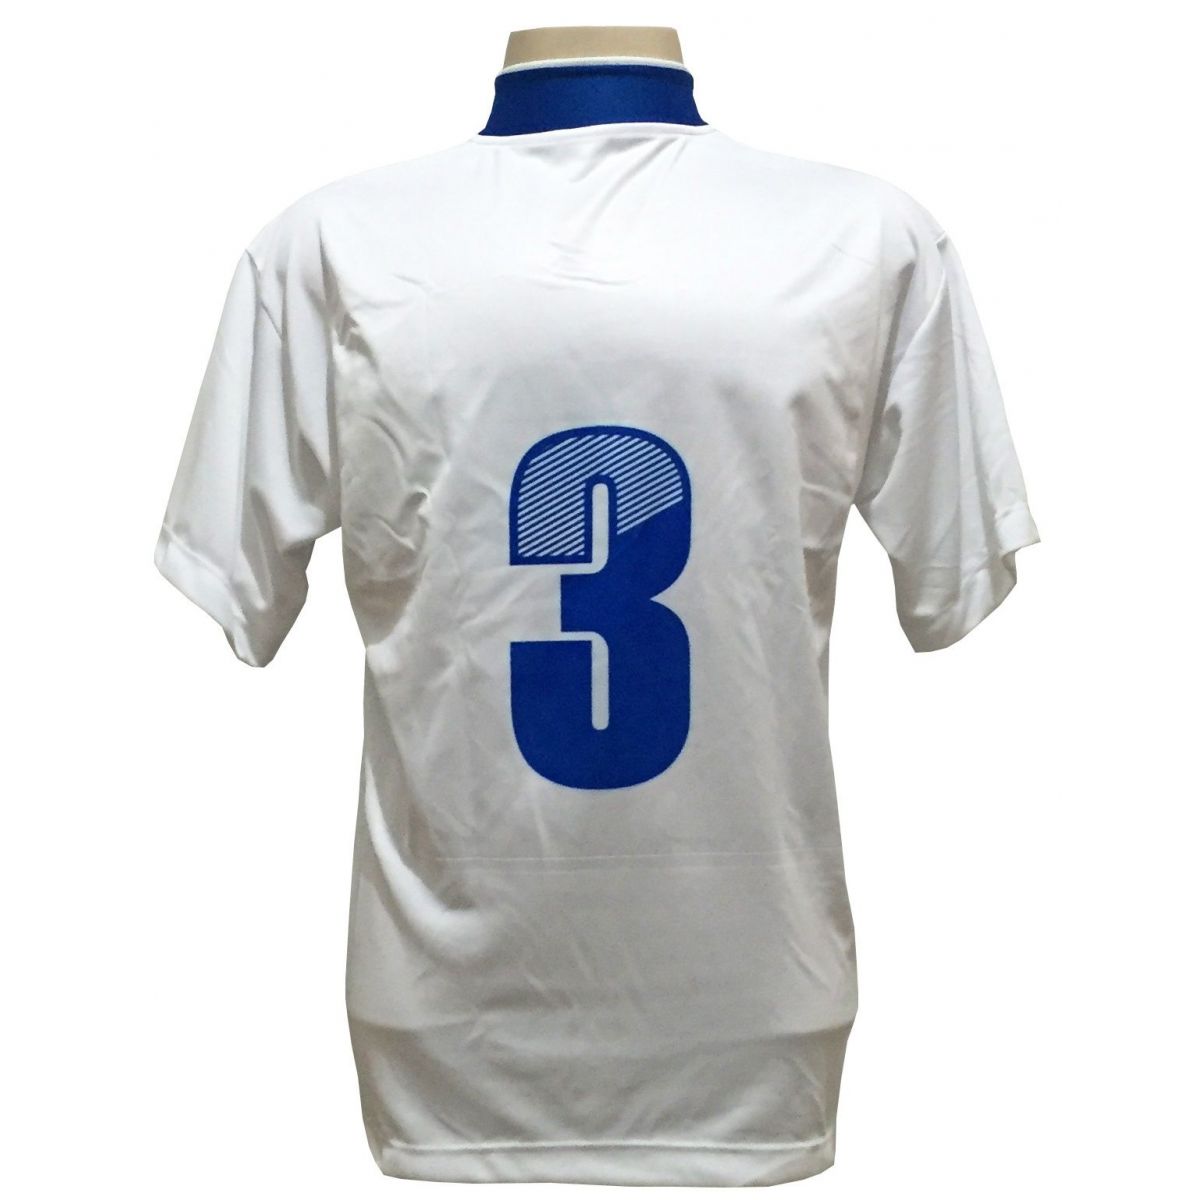 Uniforme Esportivo com 14 camisas modelo Suécia Branco/Royal + 14 calções modelo Copa + 1 Goleiro + Brindes